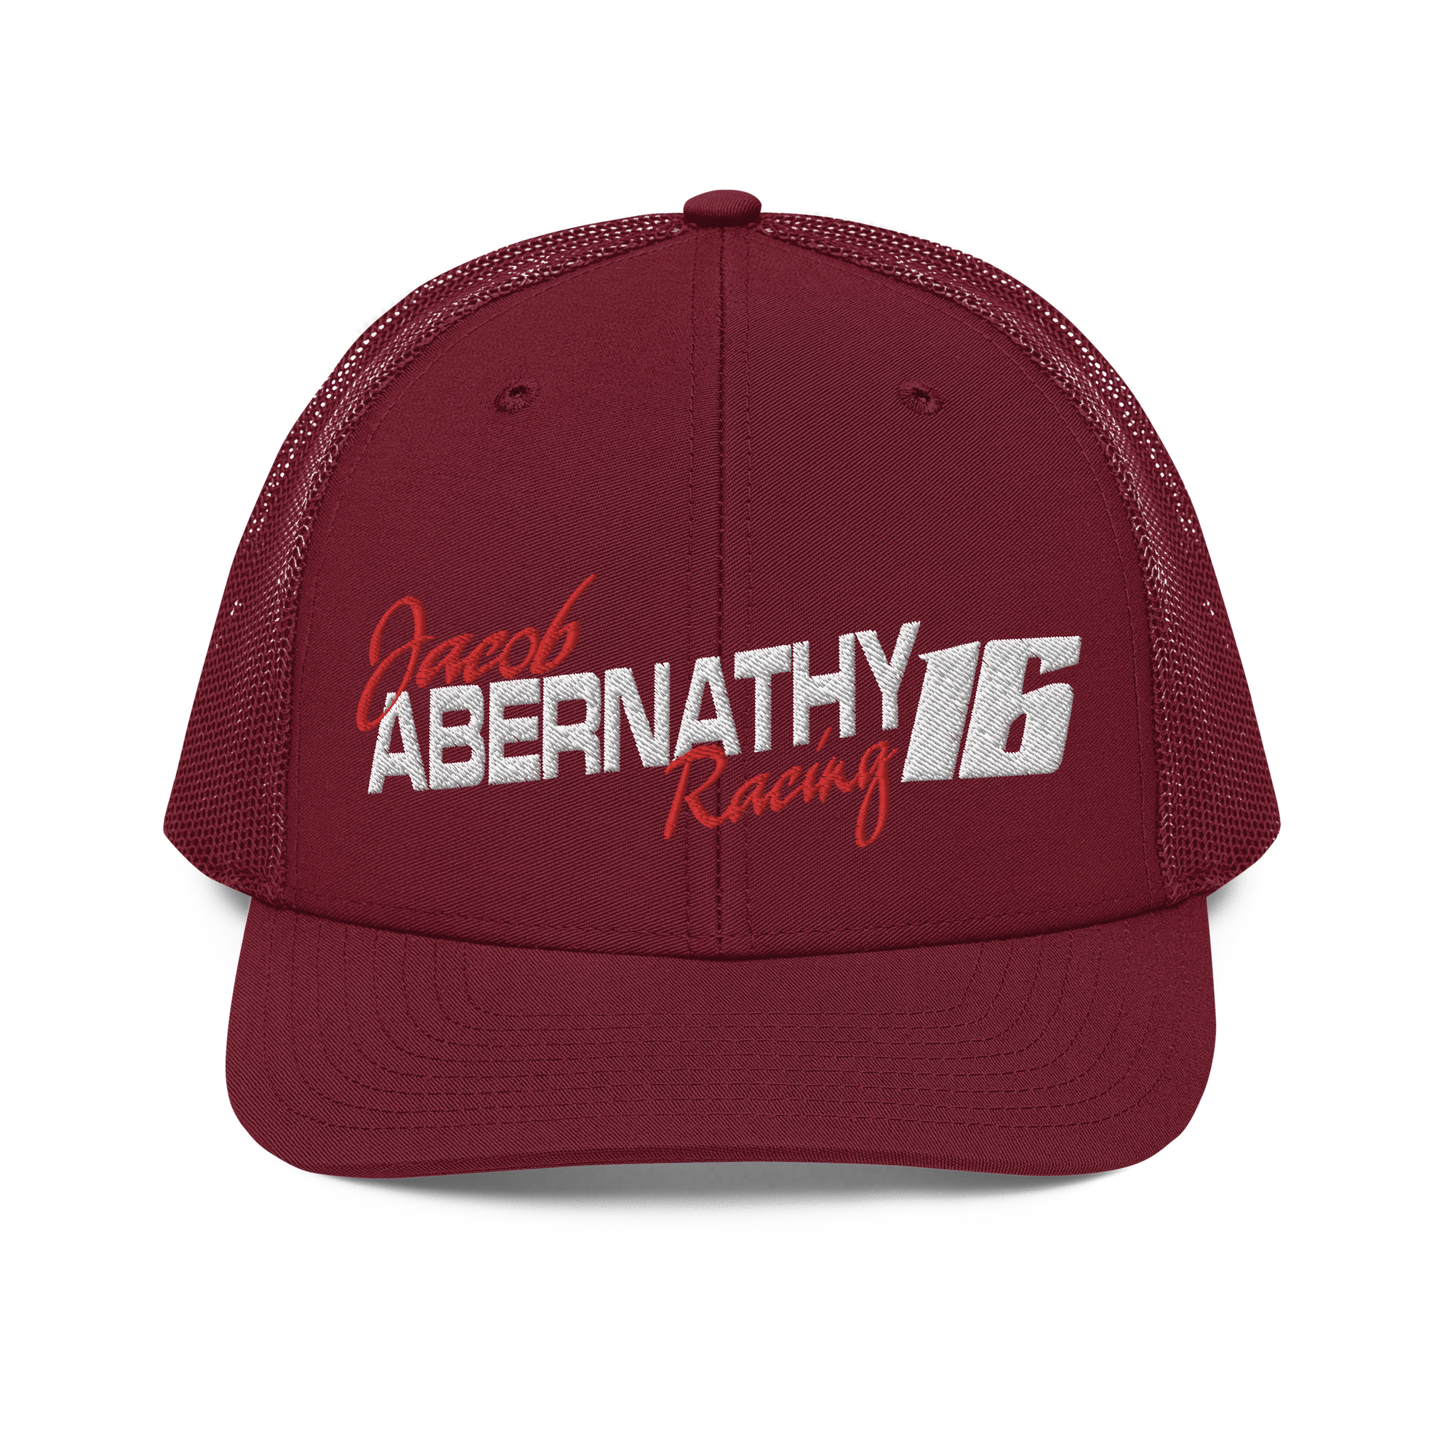 Jacob Abernathy Racing Hat